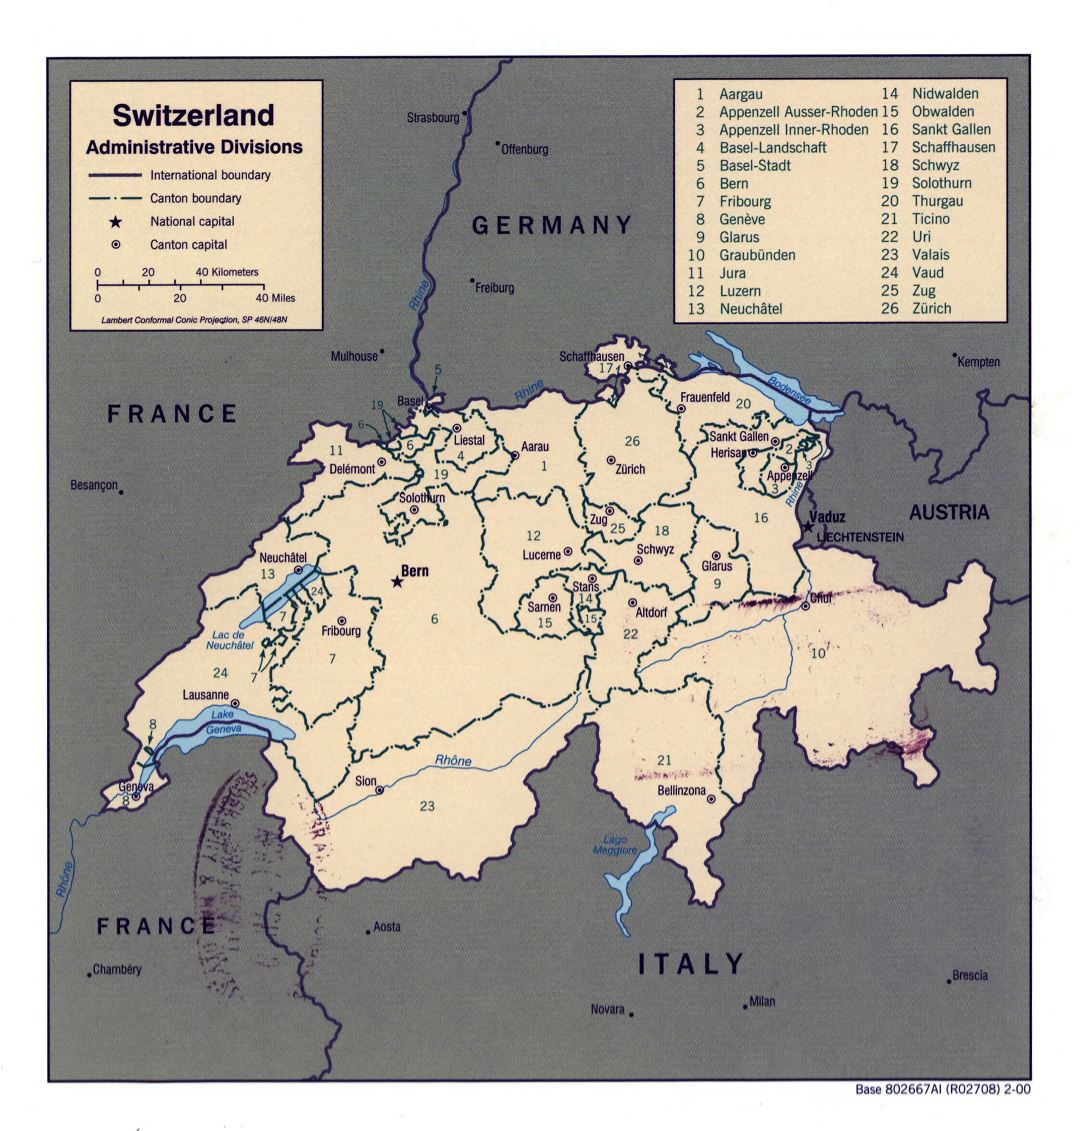 Большая детальная карта административных делений Швейцарии - 2000